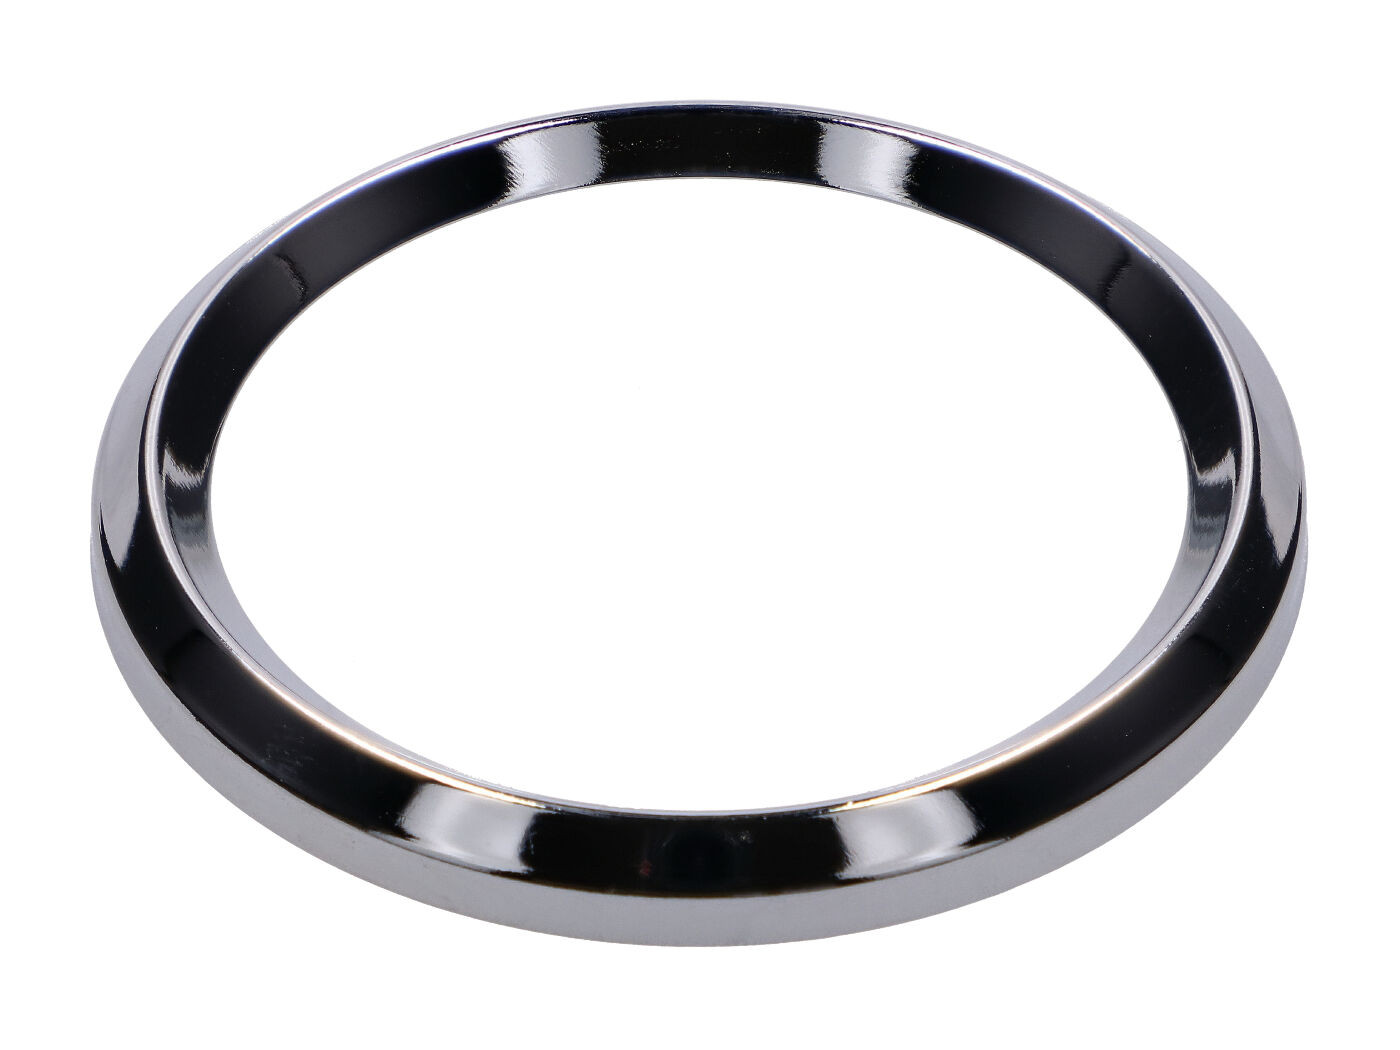 Sebességmérő gyűrű / krómgyűrű 60mm sebességmérőhöz Simson S51, S53, S70, S83, S51, S53, S70, S83